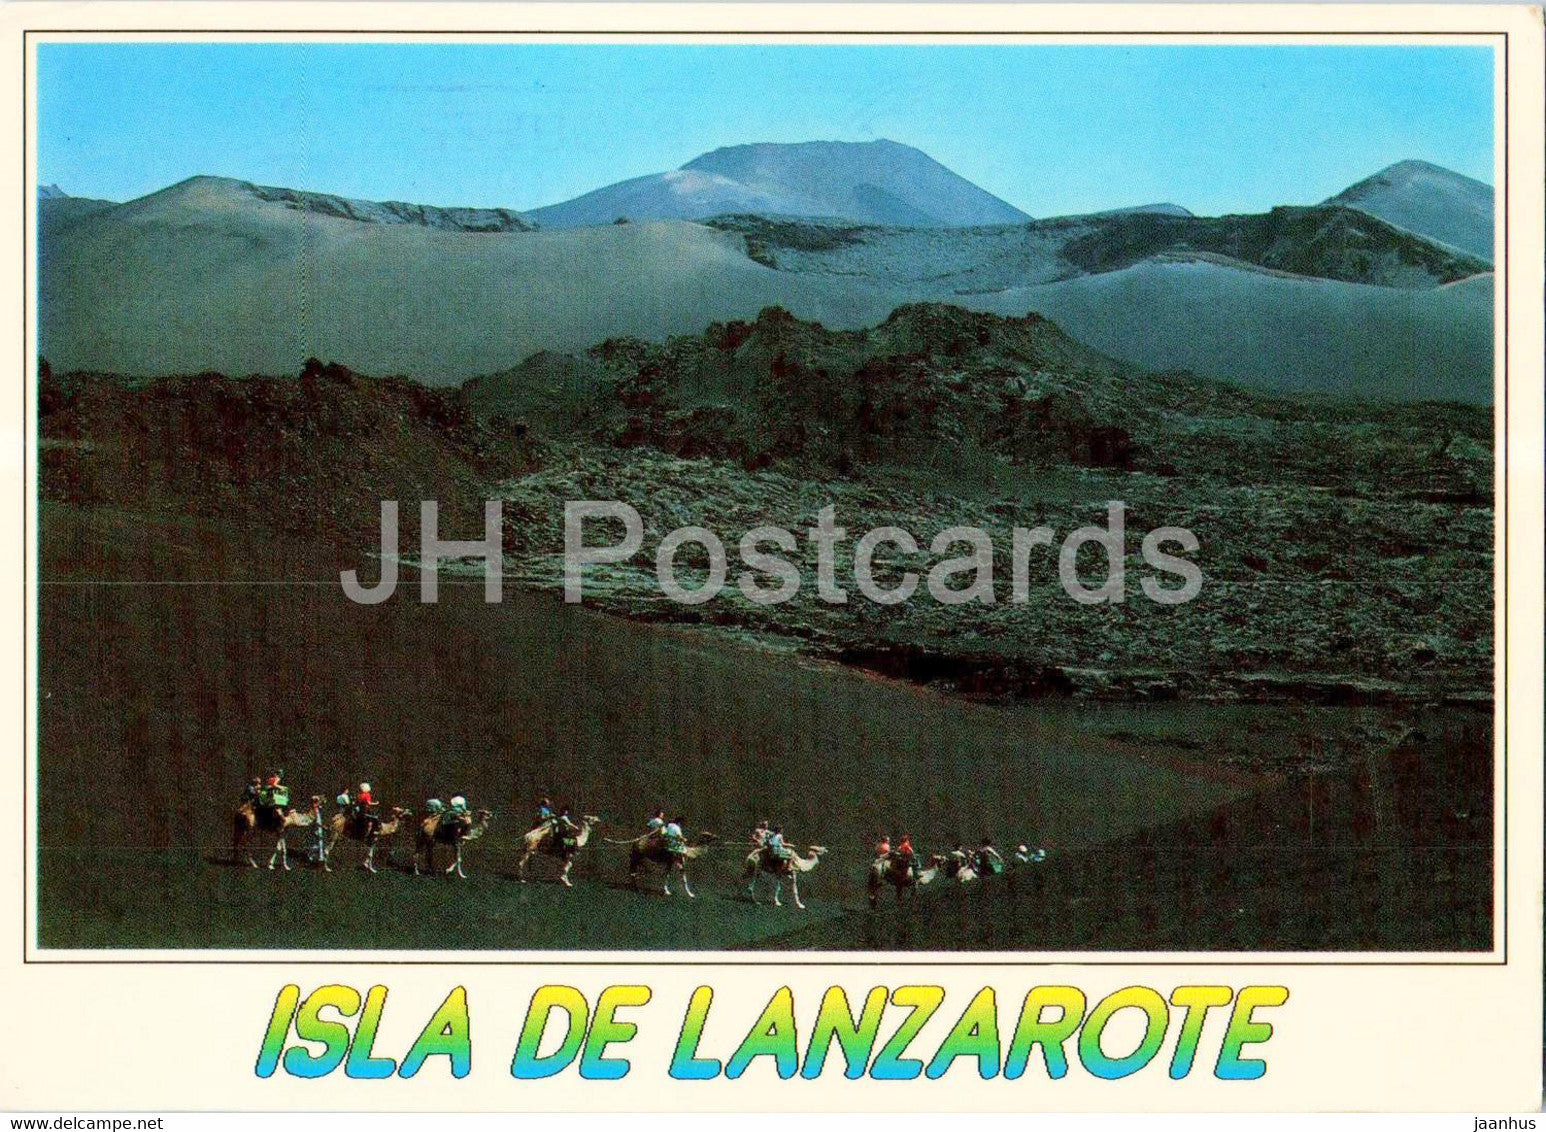 Isla de Lanzarote - Timanfaya - Camel Excursion - camel - animals - 2002 - Spain - used - JH Postcards